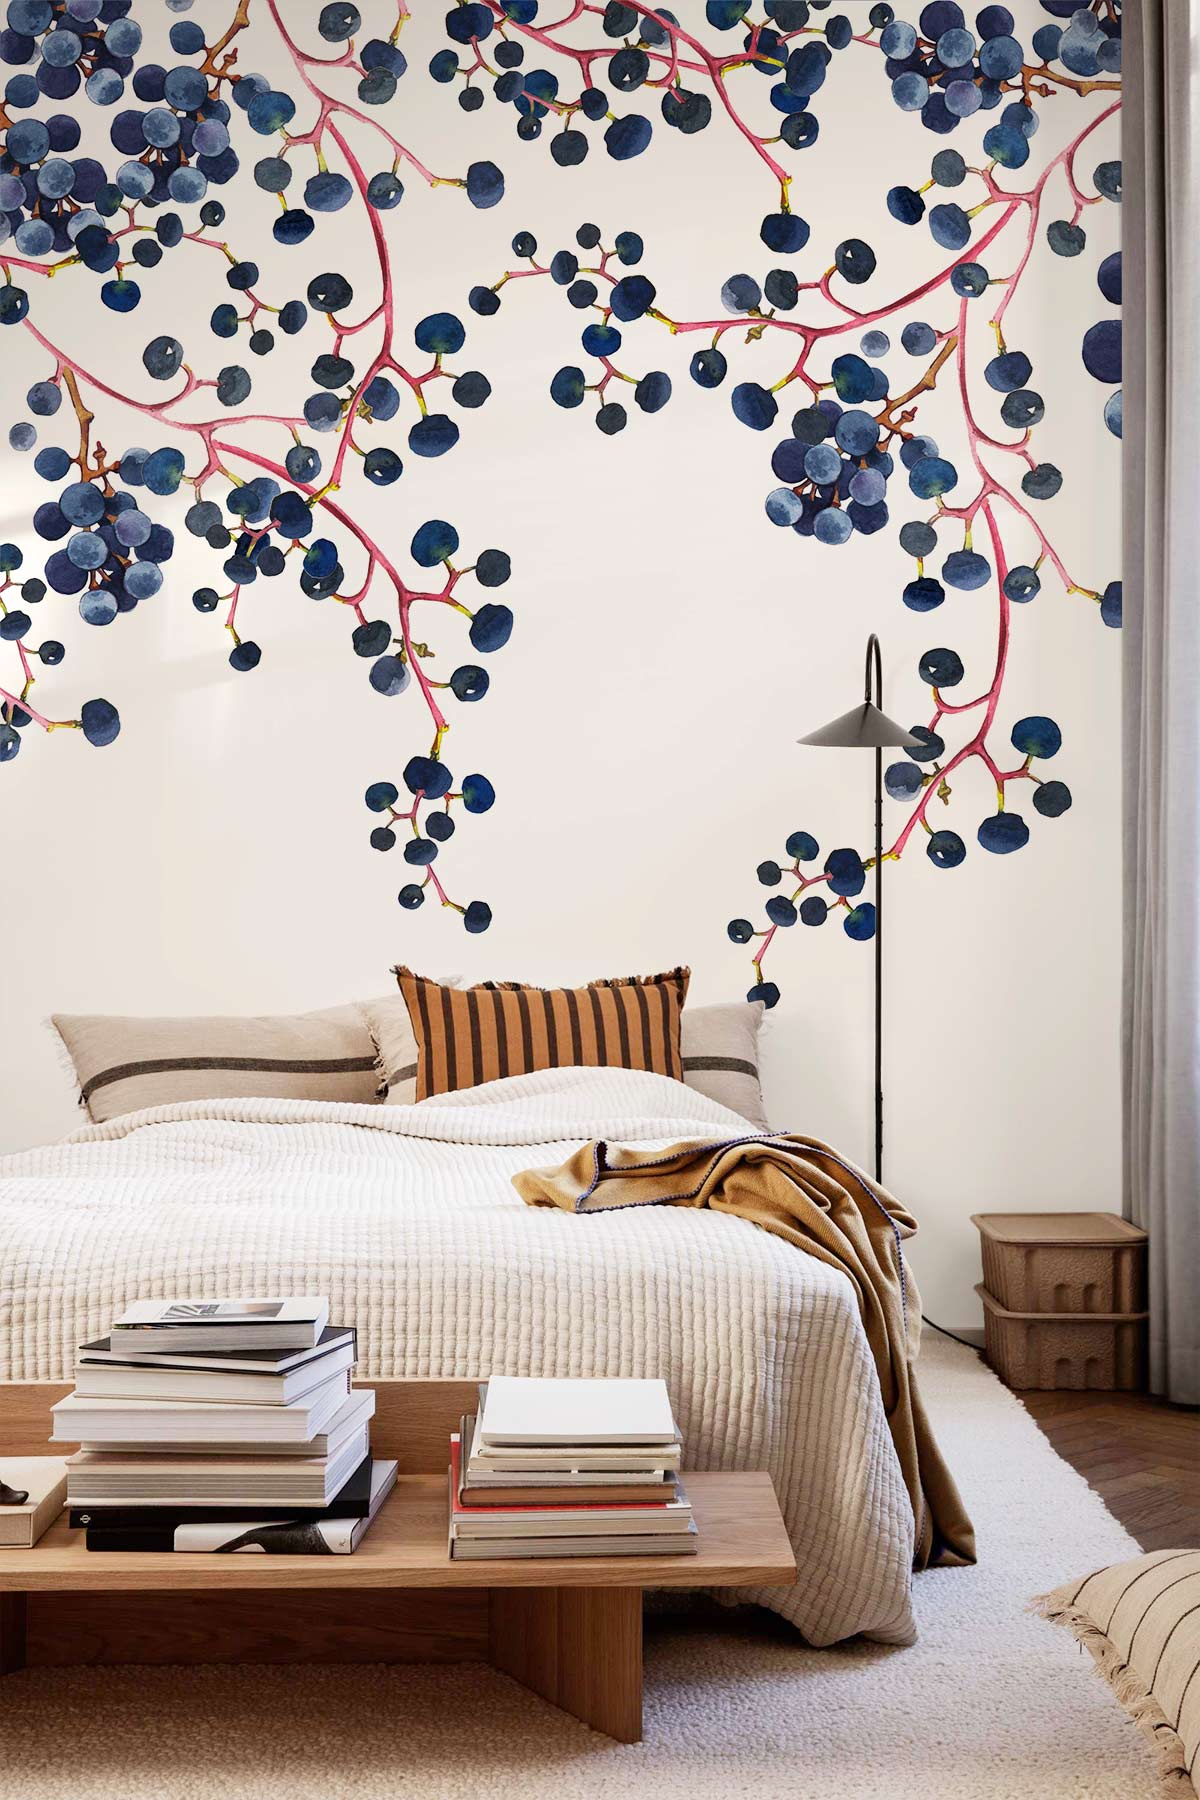 blue berry fruit wallpaper mural for bedroom